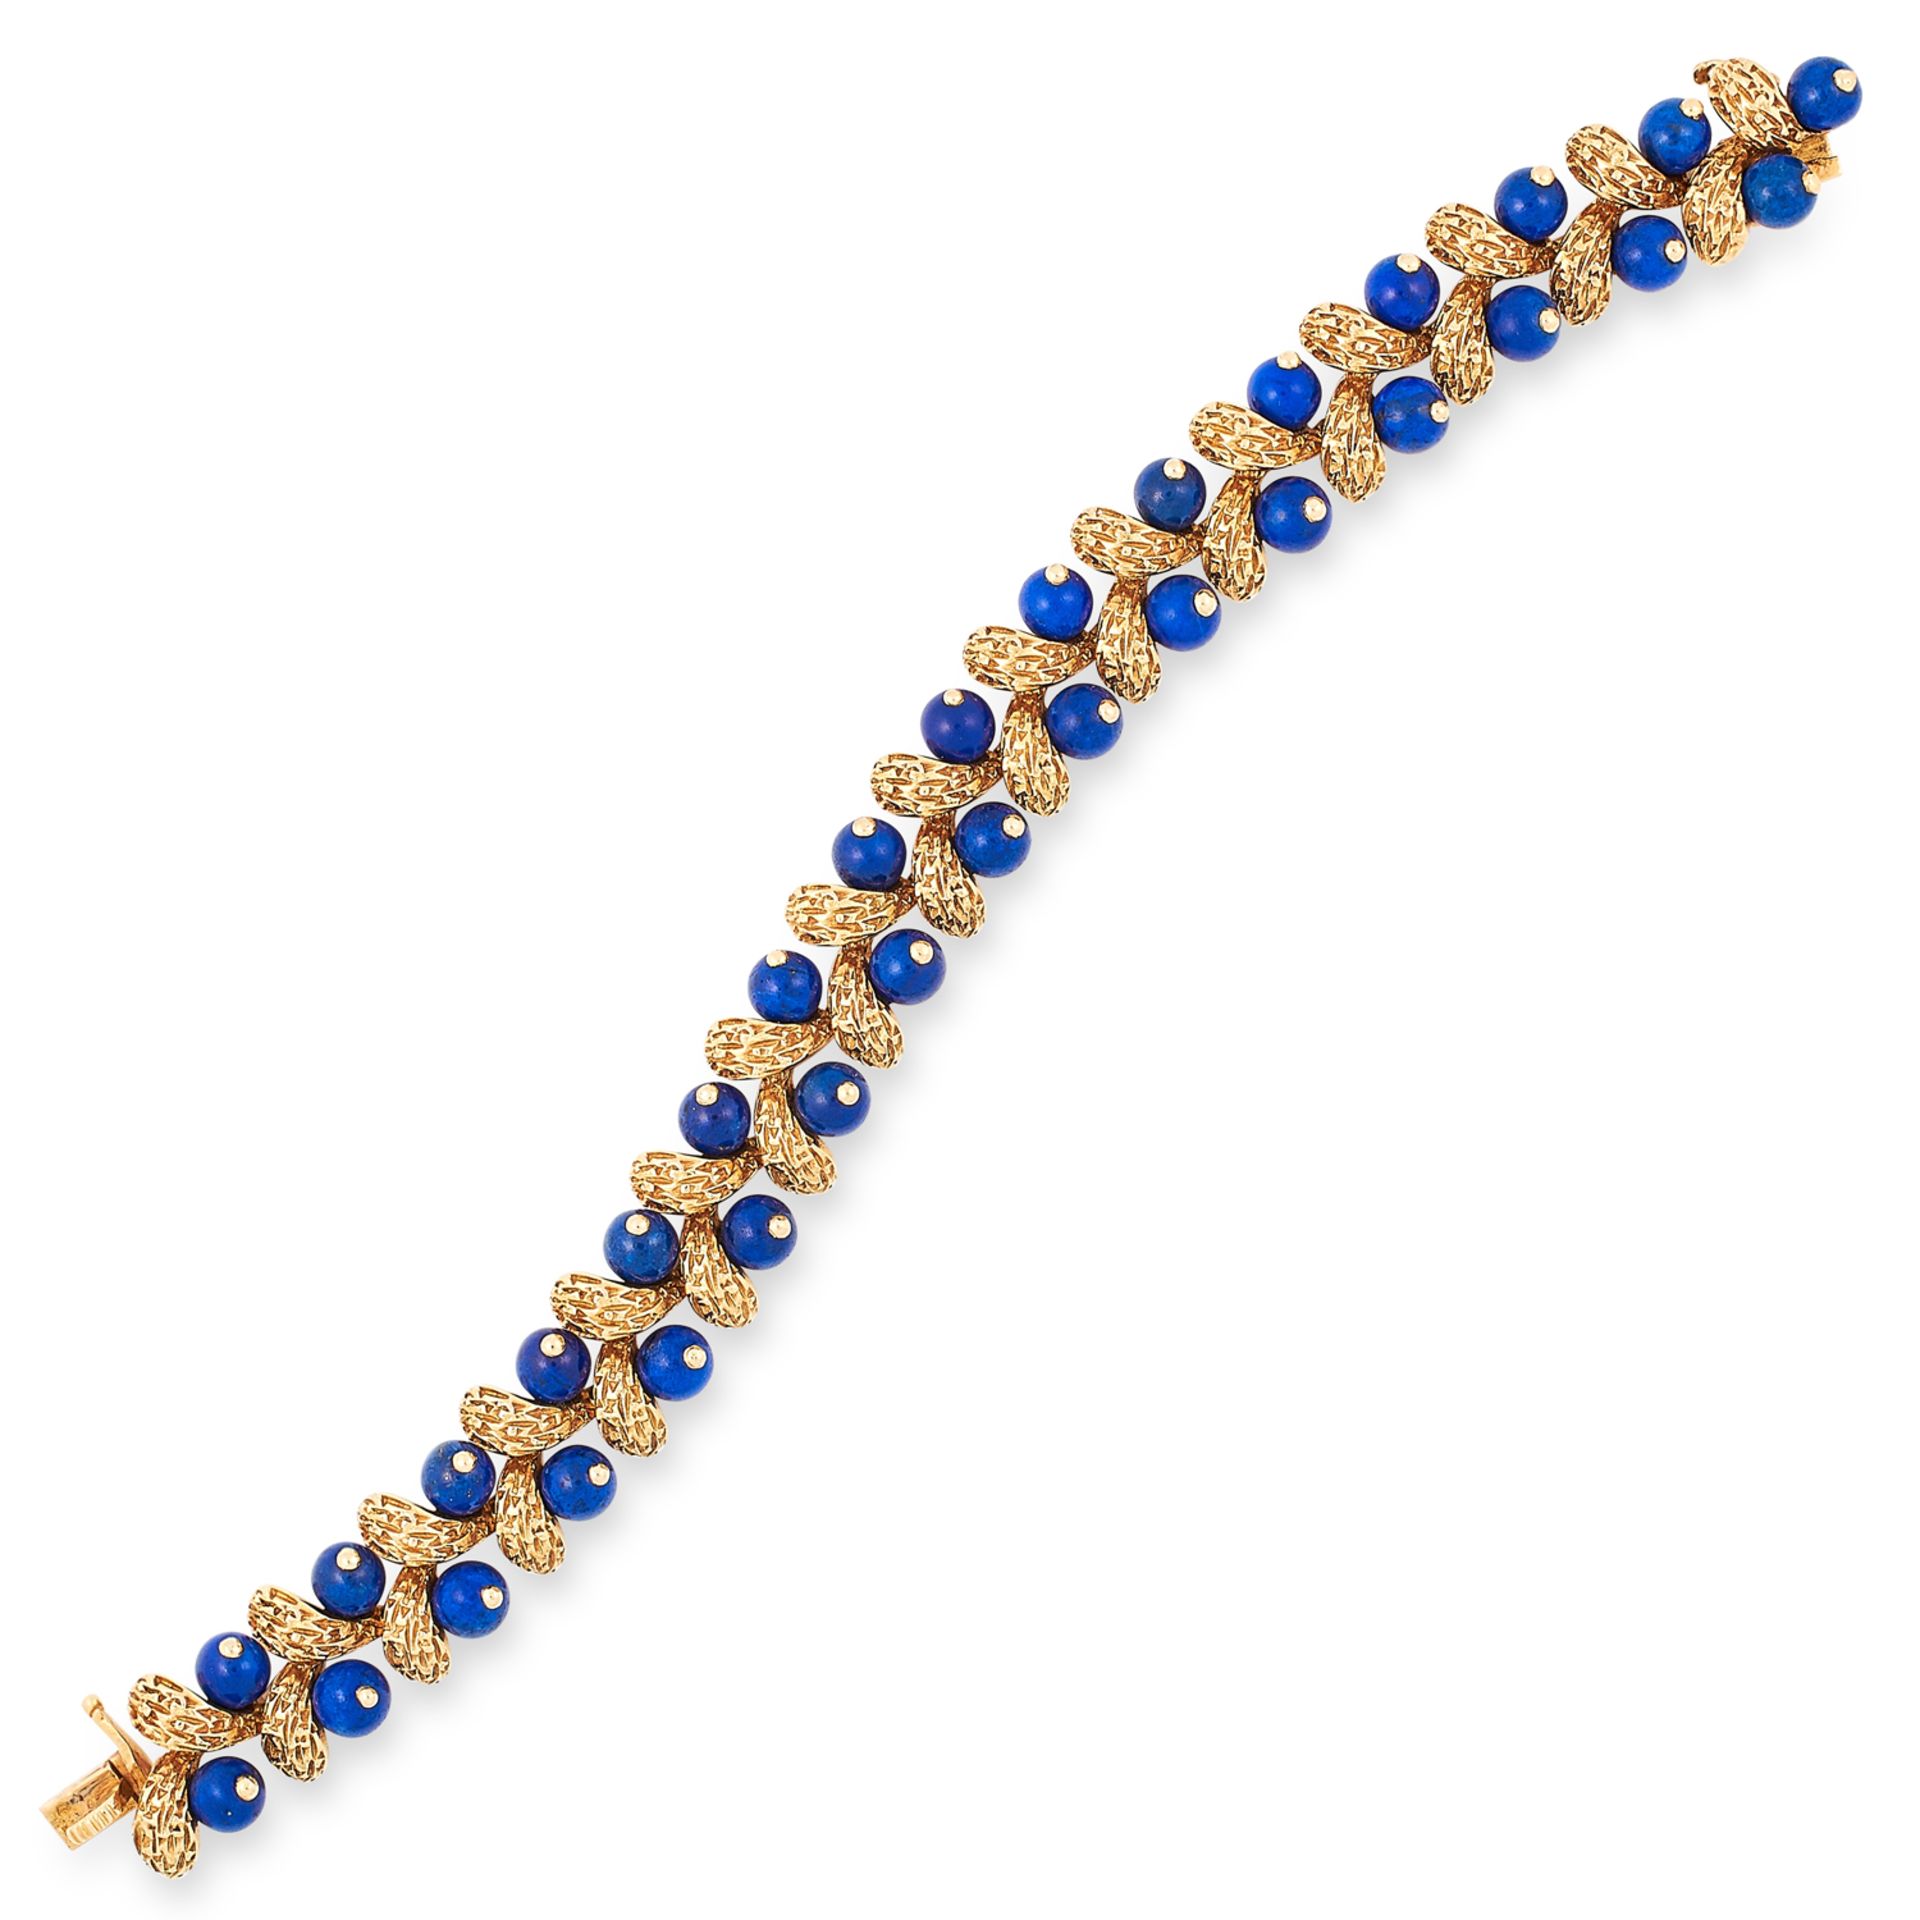 A LAPIS LAZULI BRACELET, VAN CLEEF AND ARPELS CIRCA 1960 set with lapis lazuli beads between